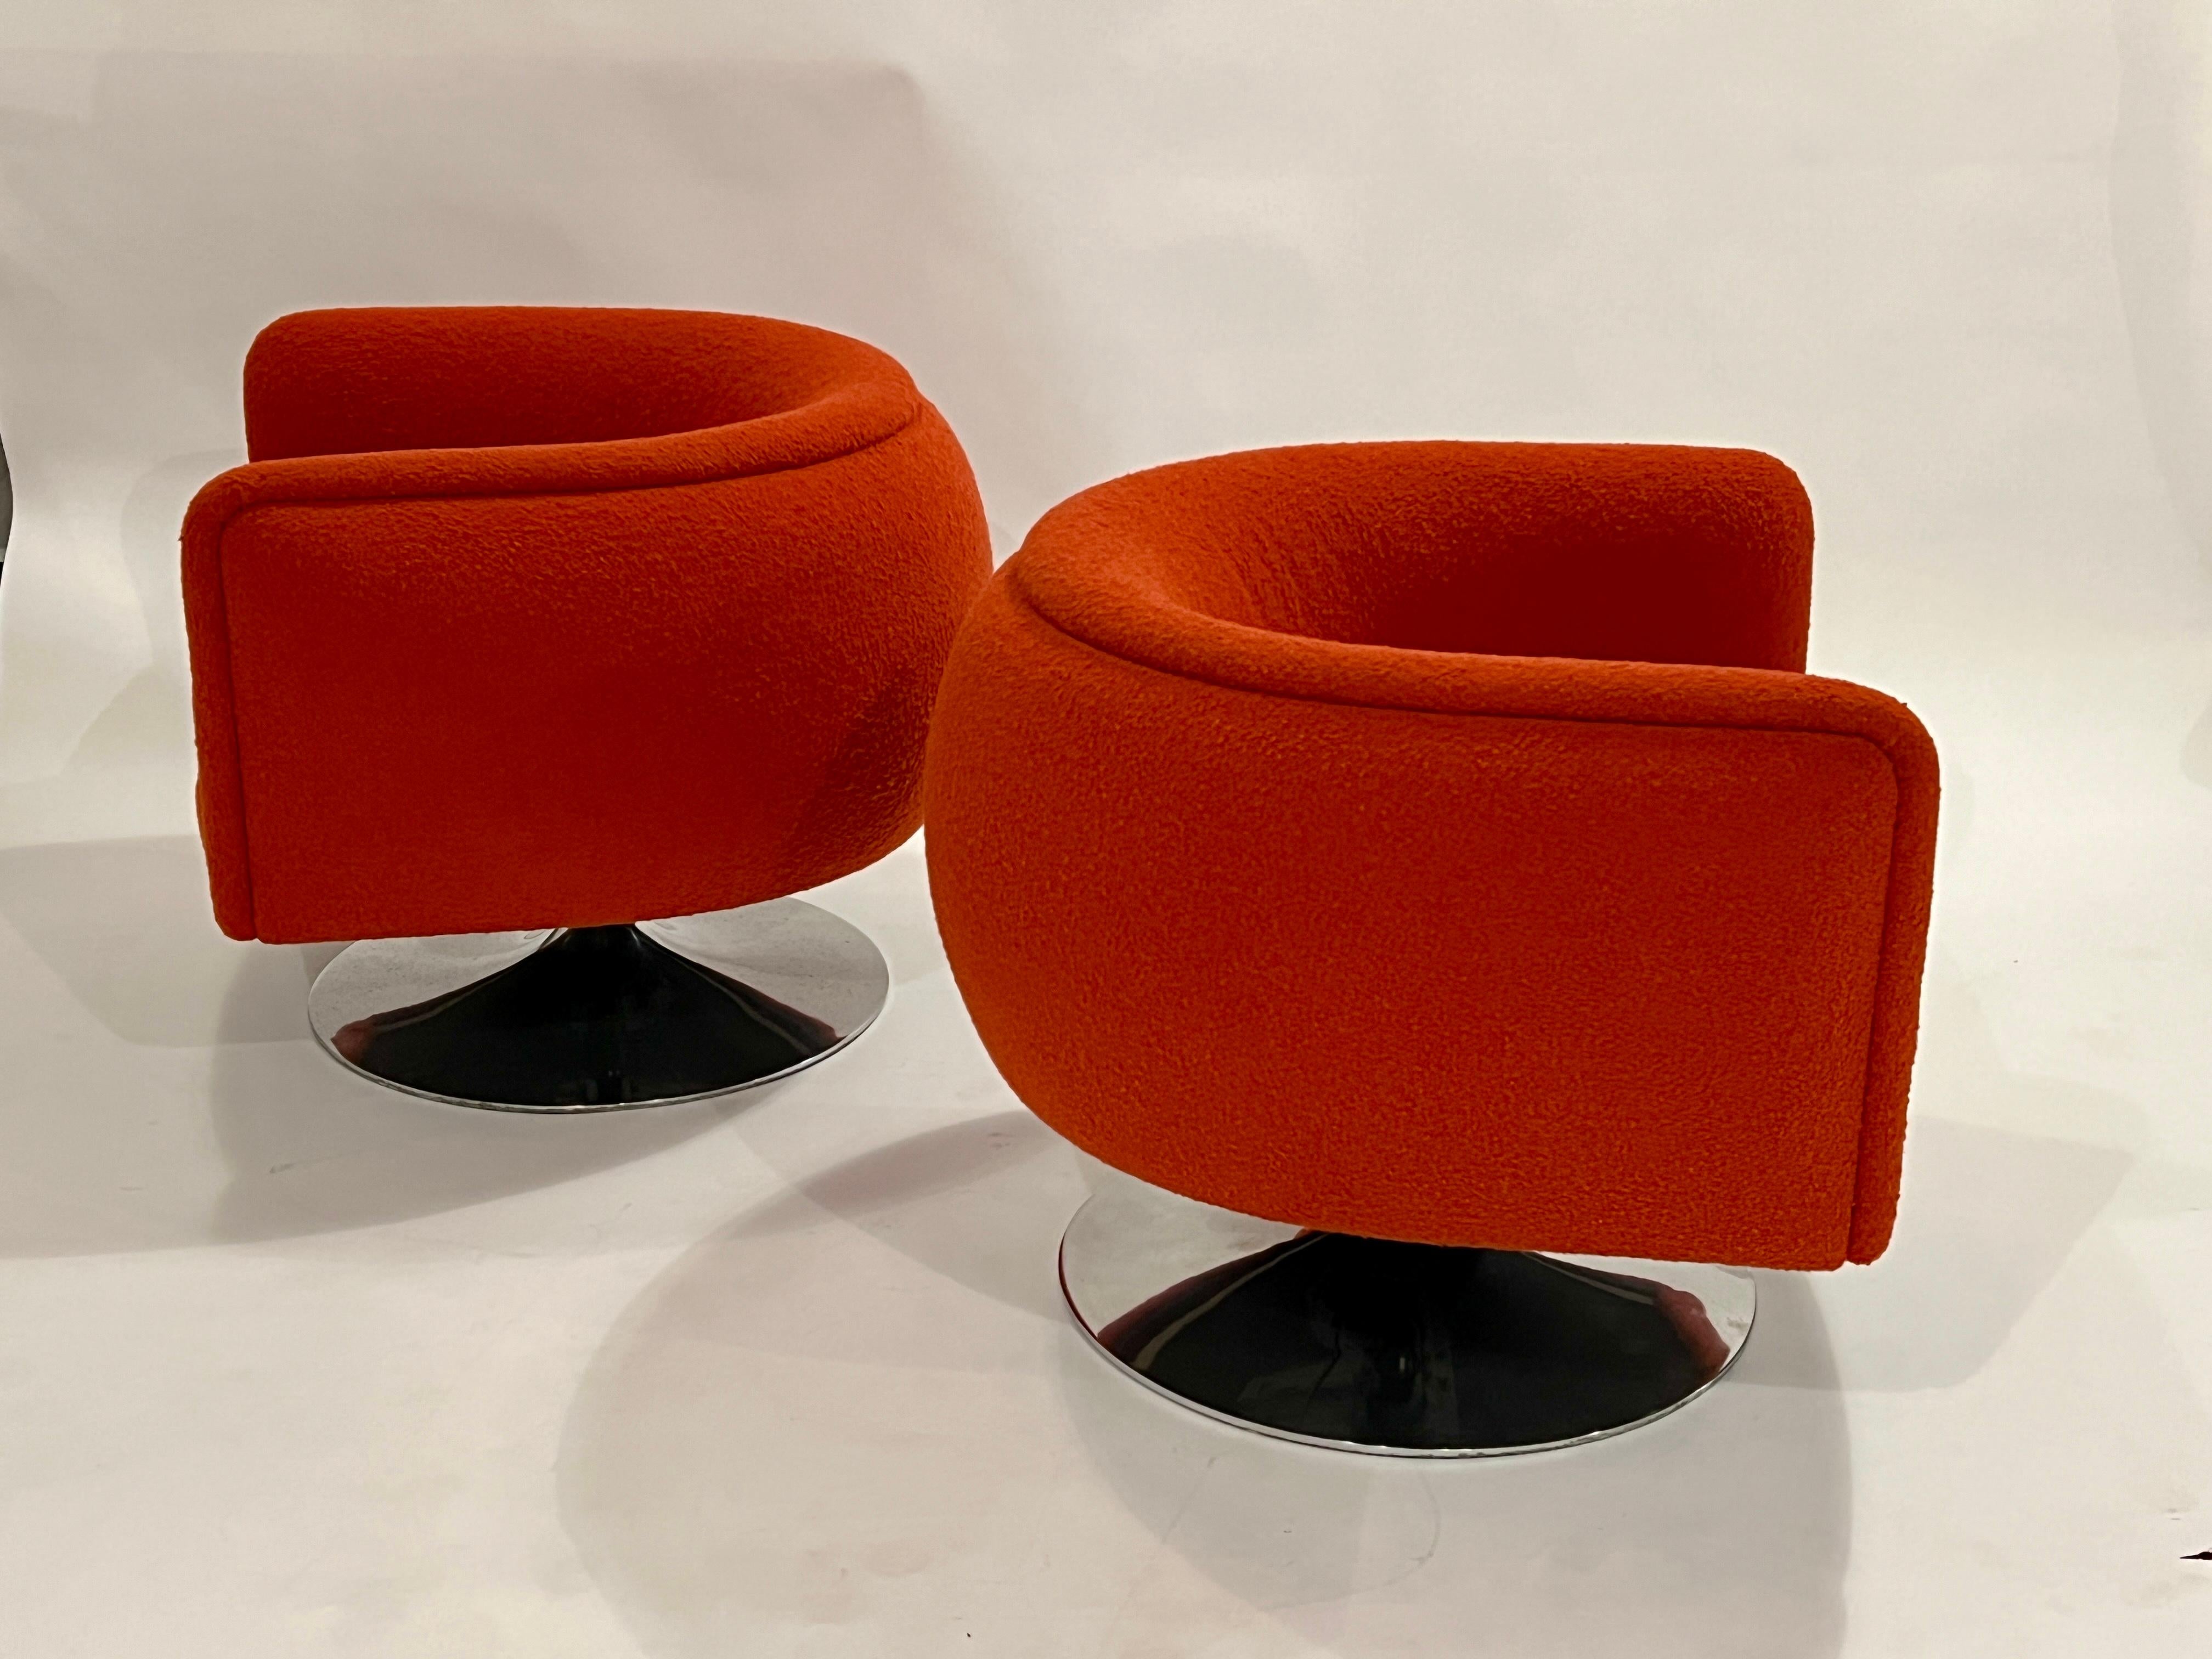 Paire de fauteuils de salon pivotants Joseph D'Urso sur des bases en aluminium poli et chromé, avec tissu boucle rouge d'origine et sièges réglables. Mesures avec variations de la hauteur d'assise réglable :

Chaise : 32